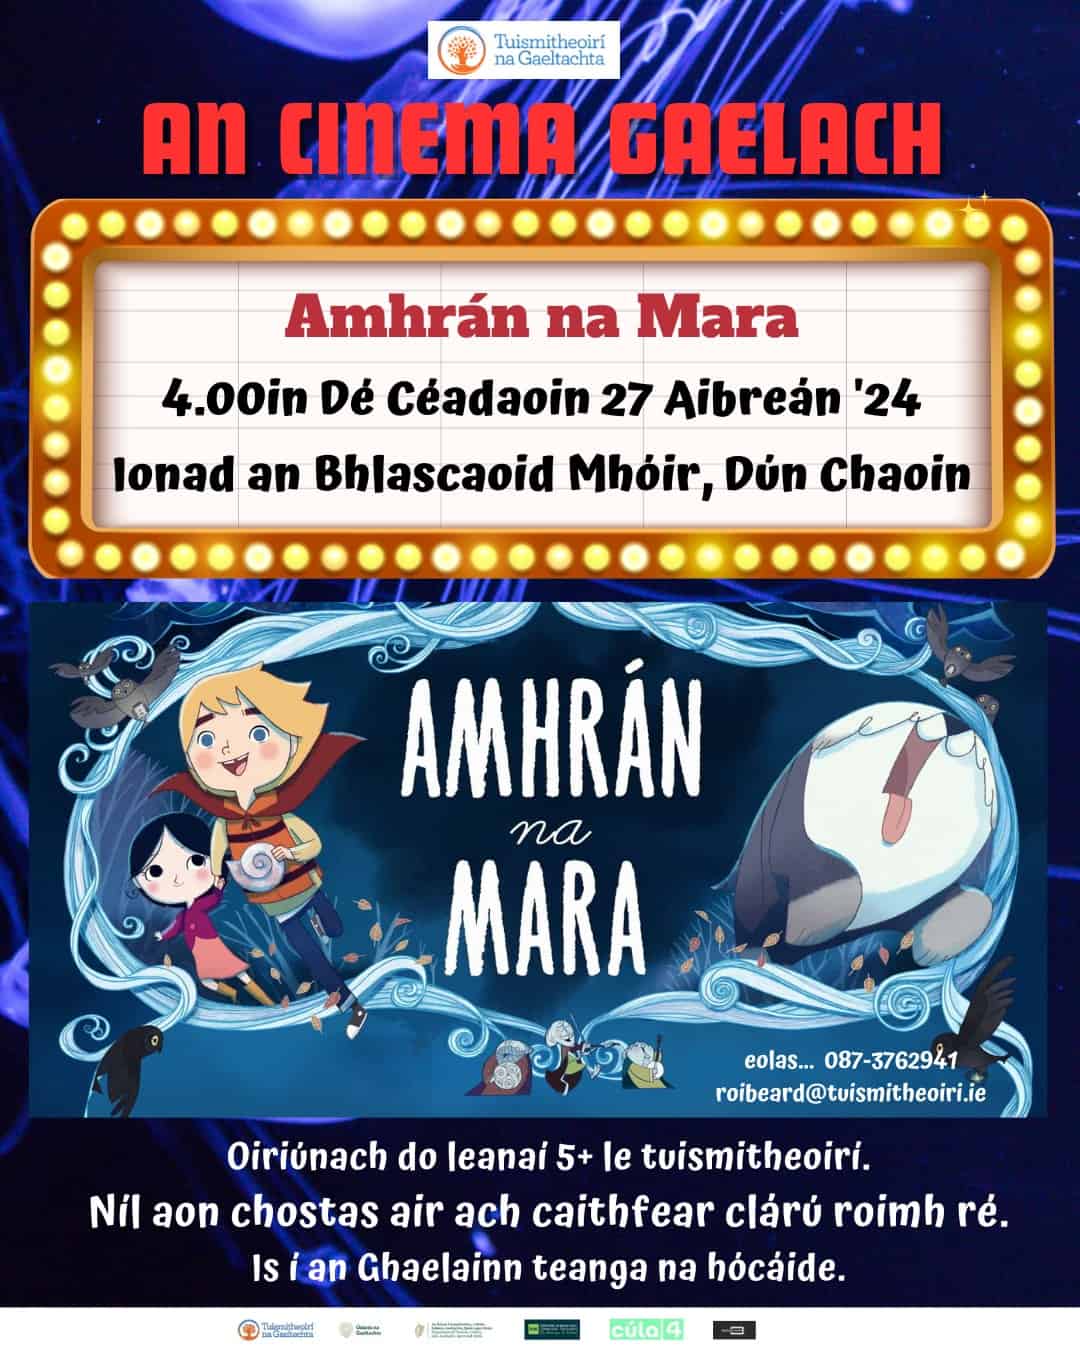 An Cinema Gaelach – Amhrán na Mara